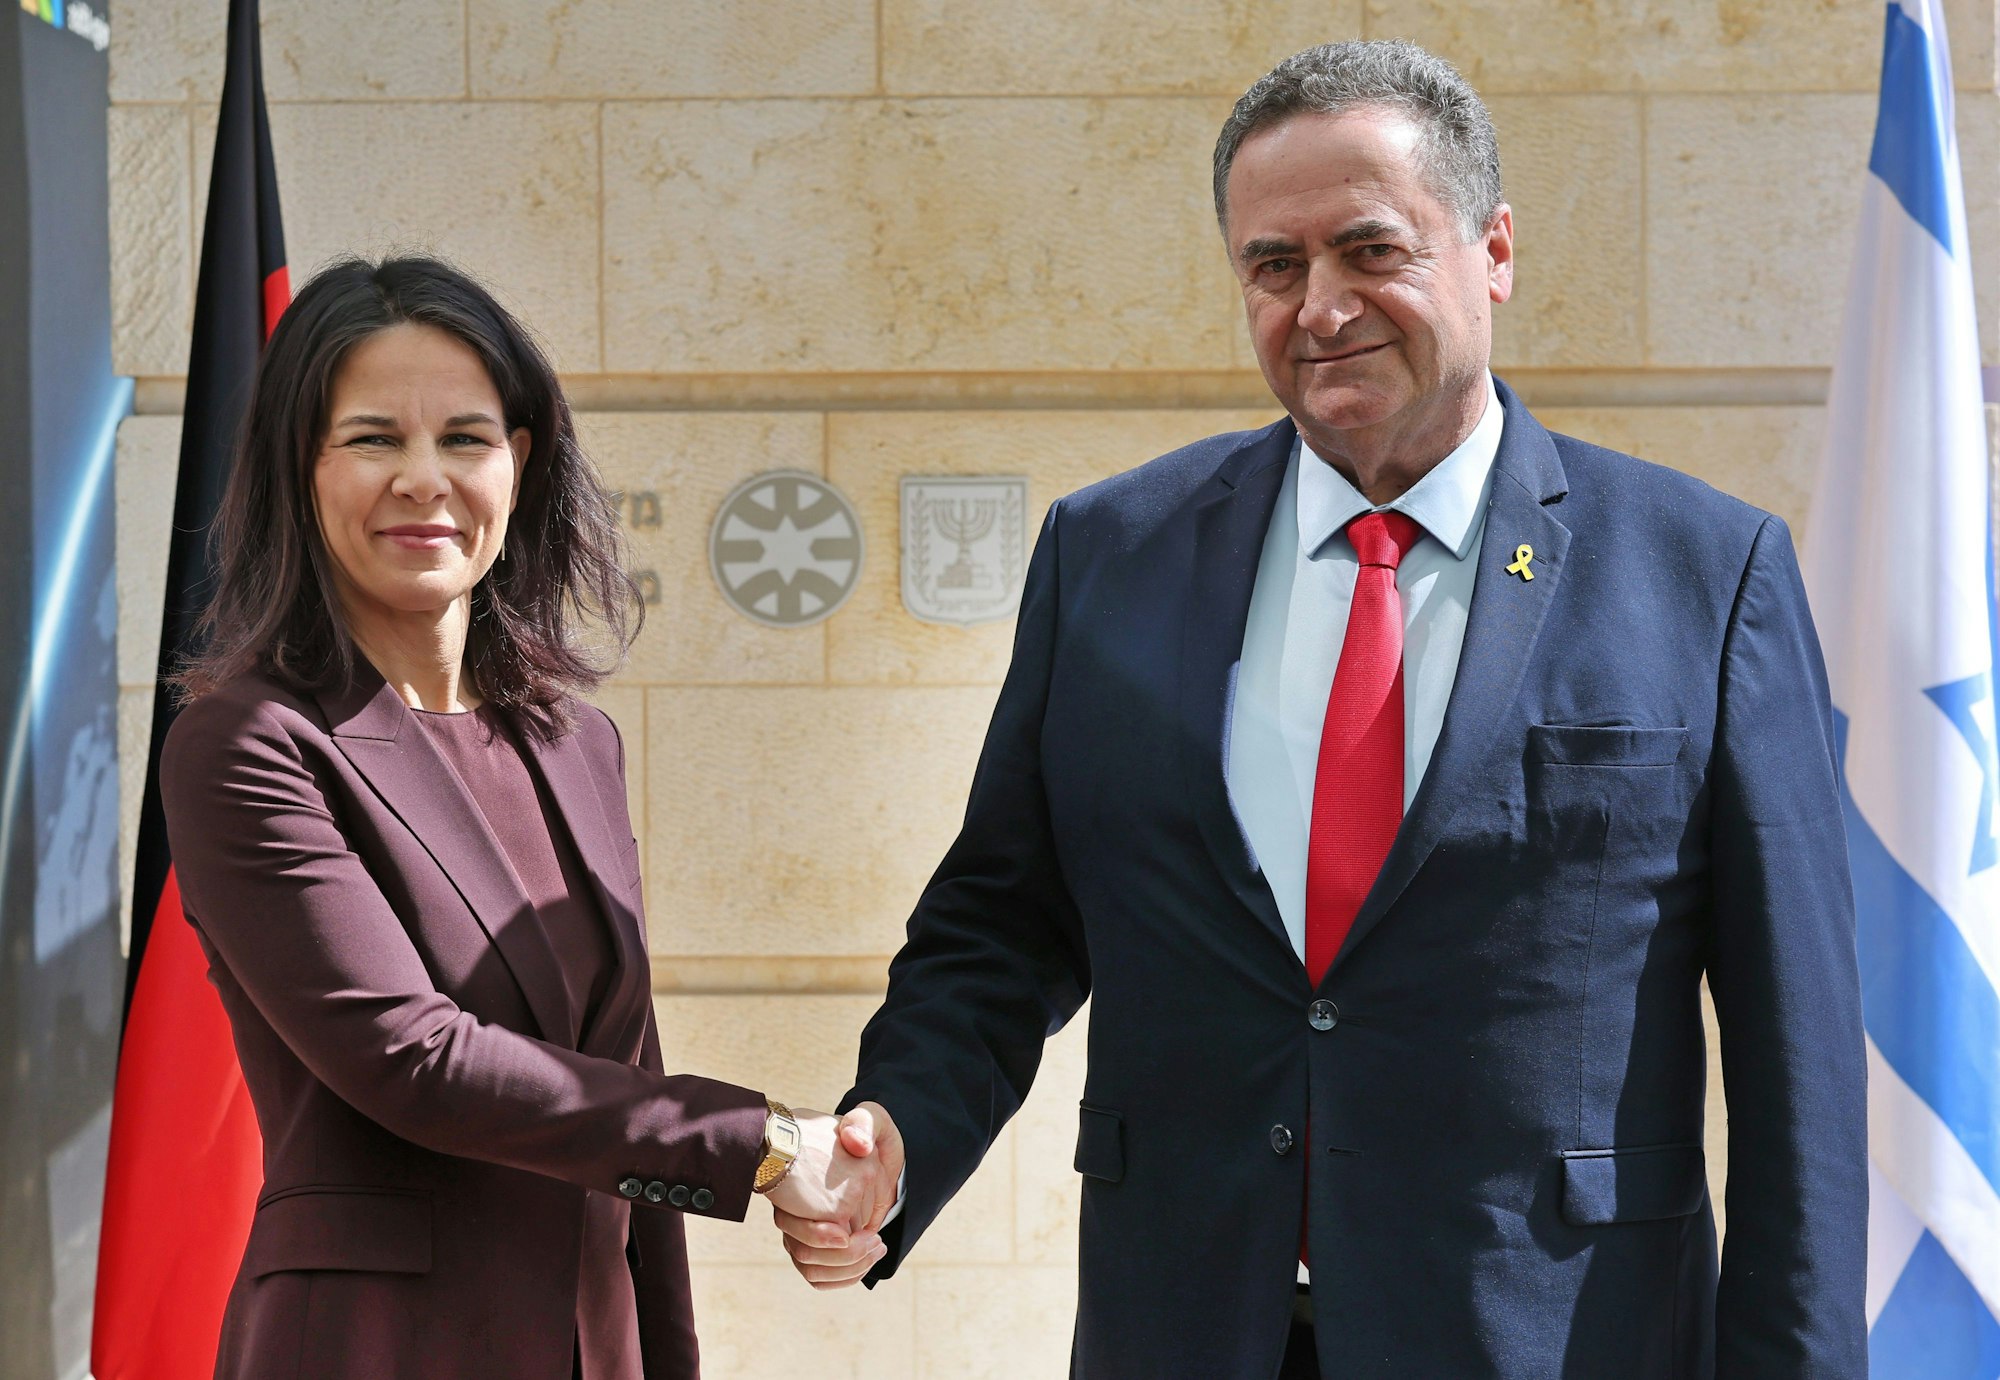 Der israelische Außenminister Israel Katz (r) schüttelt der deutschen Außenministerin Annalena Baerbock (l, Bündnis90/Grüne) vor den jeweiligen Landesflaggen die Hand.